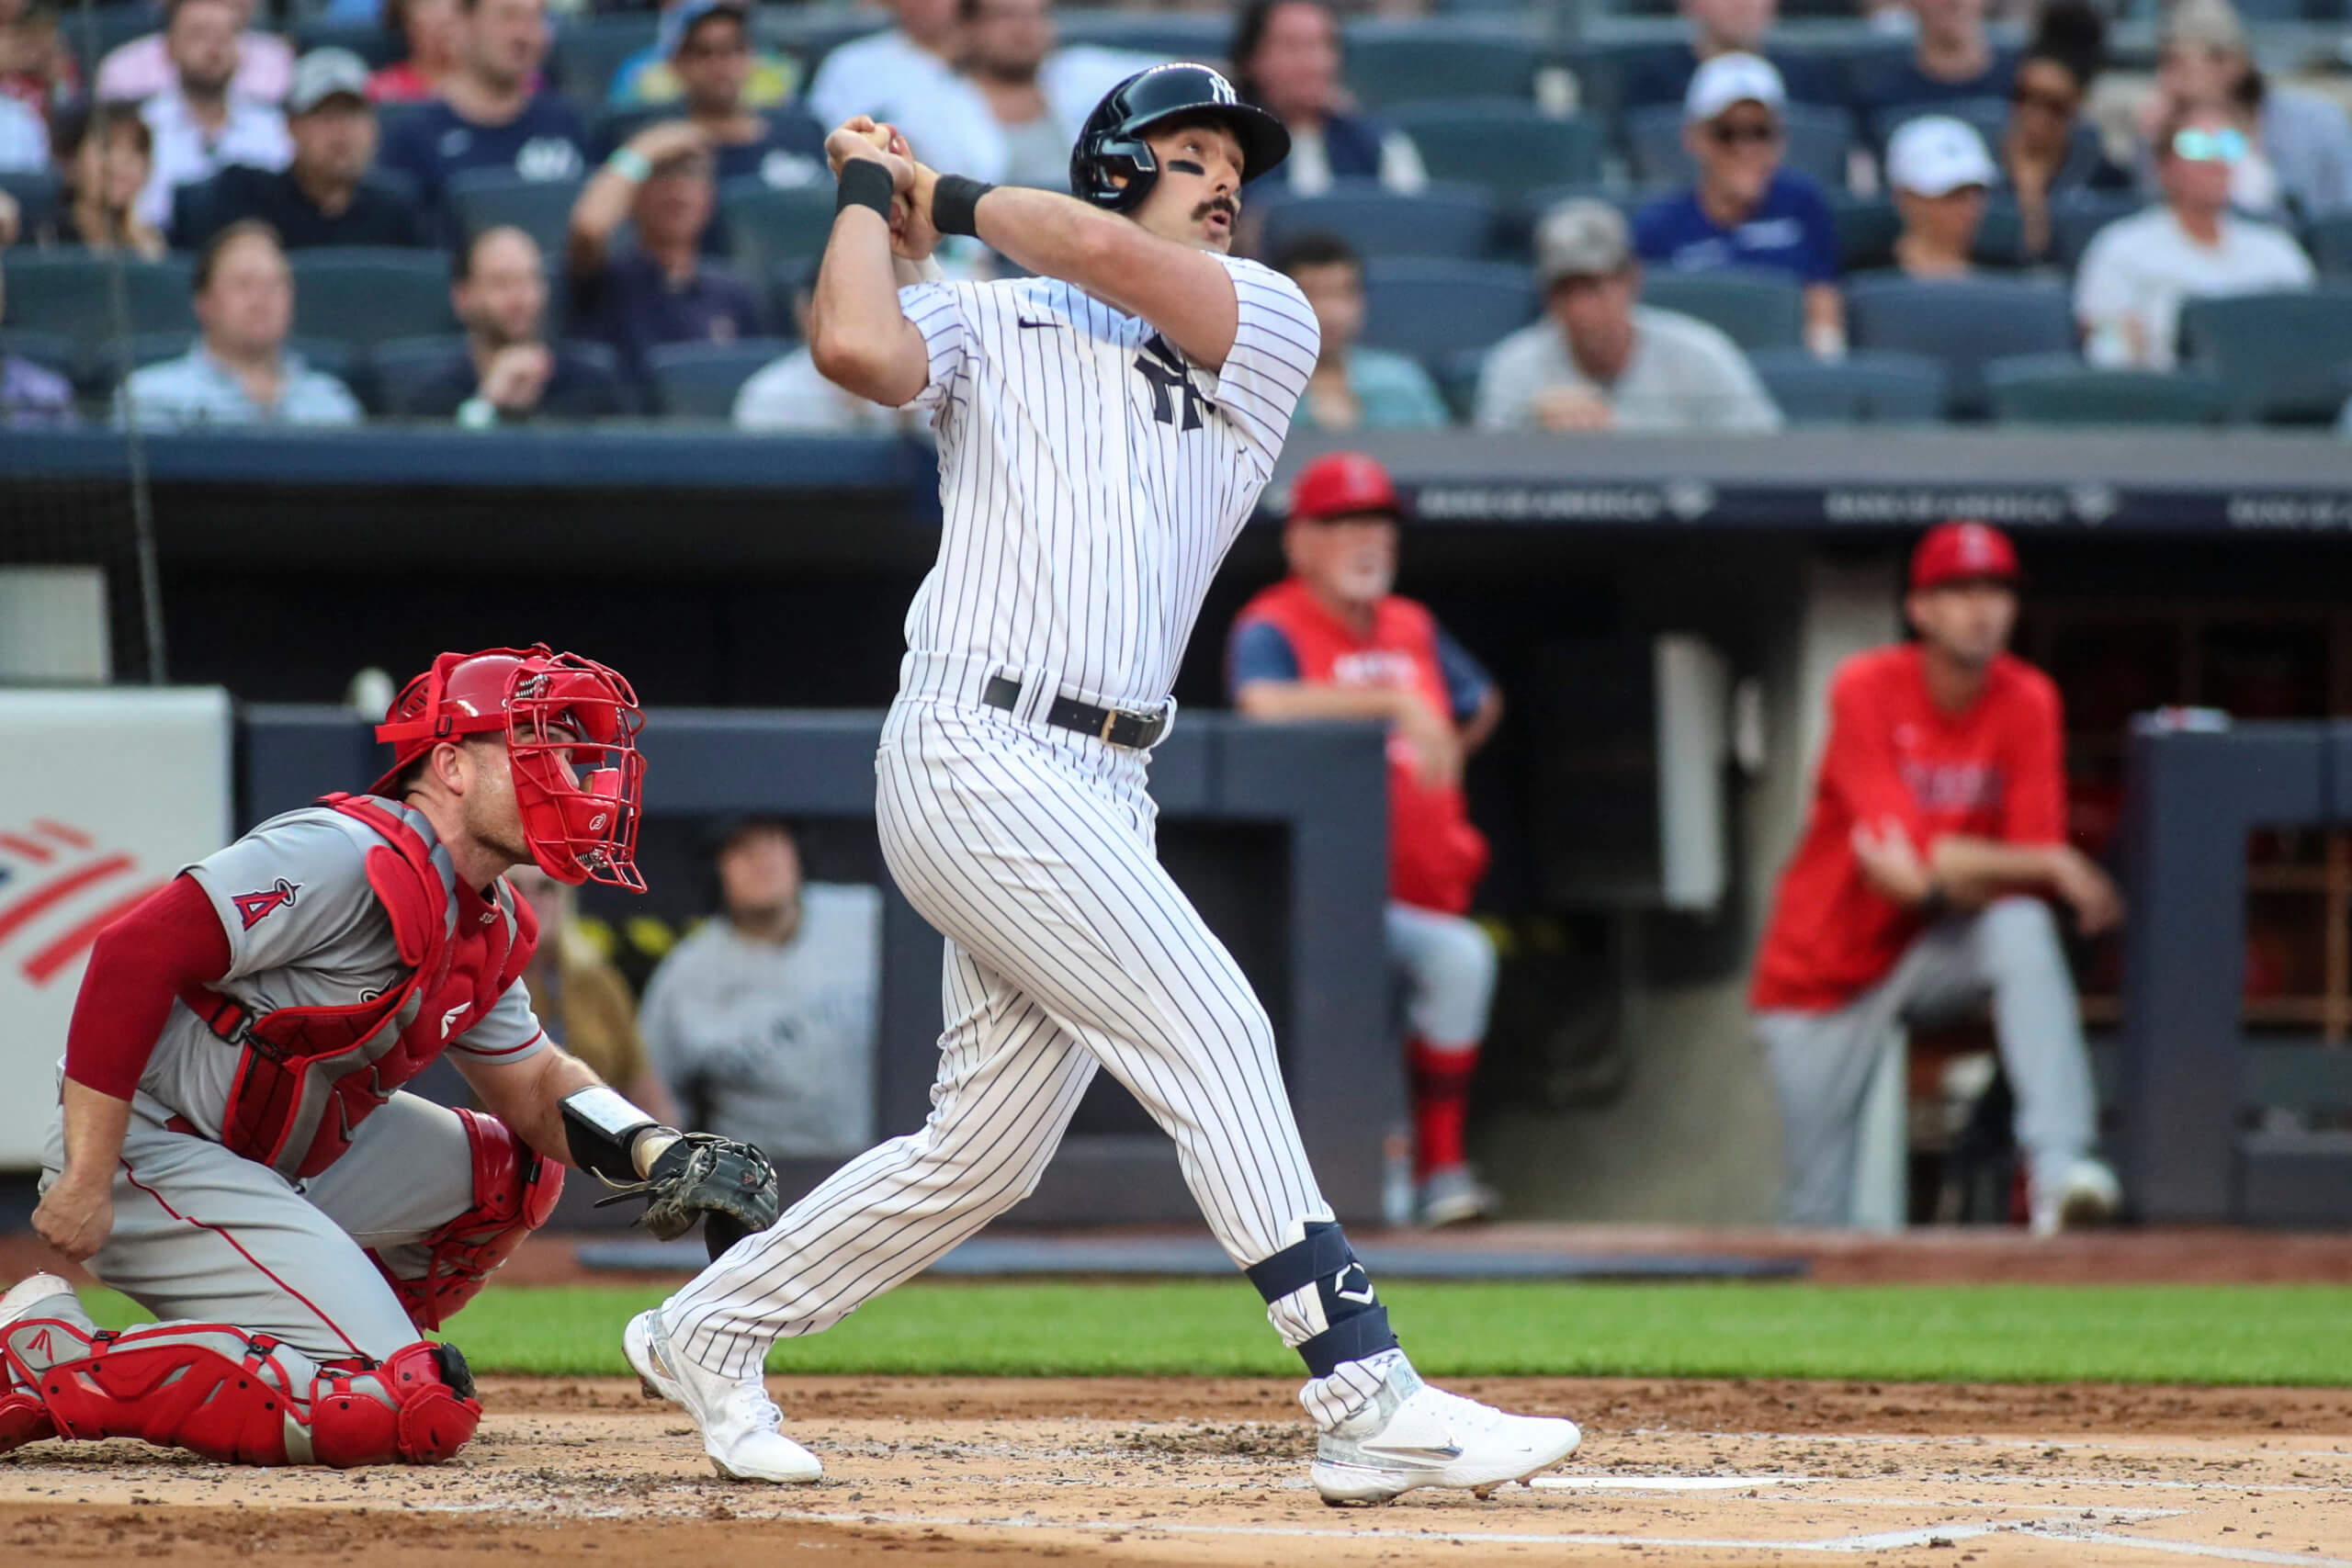 Yankees' Matt Carpenter strikes out again in key at bat